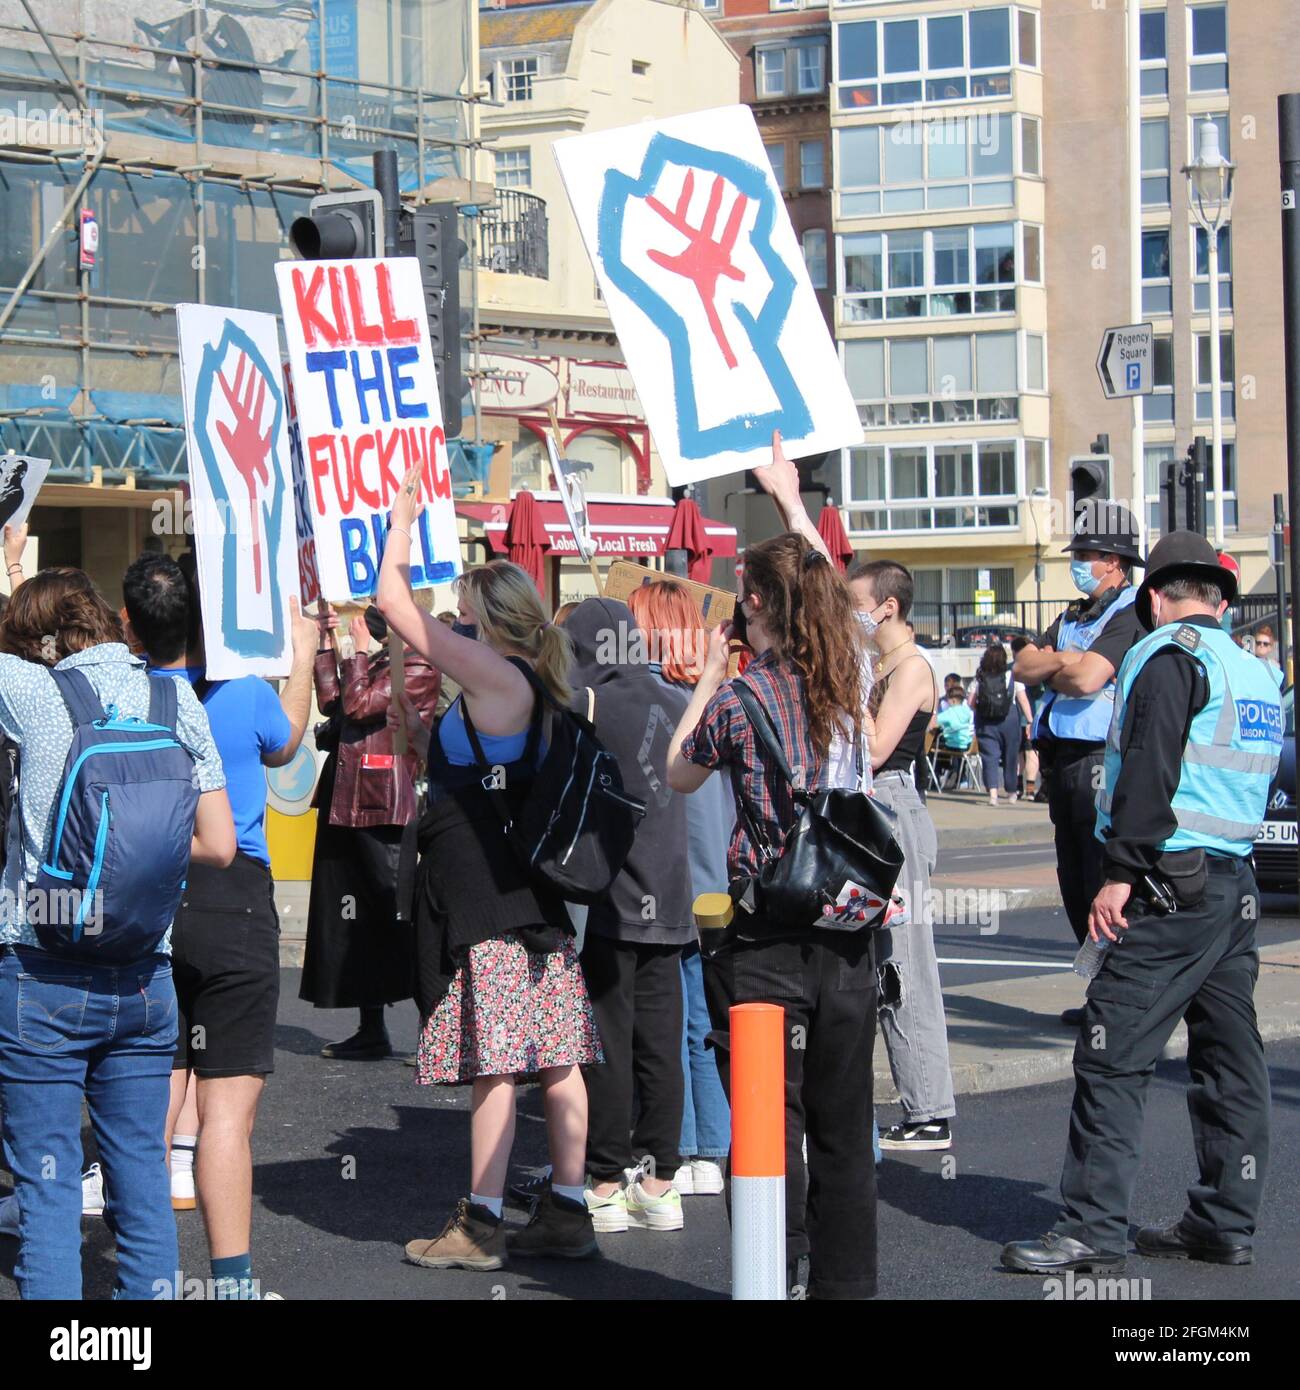 Demonstration gegen Polizeigesetz auf den Straßen von Brighton, England, Großbritannien Stockfoto